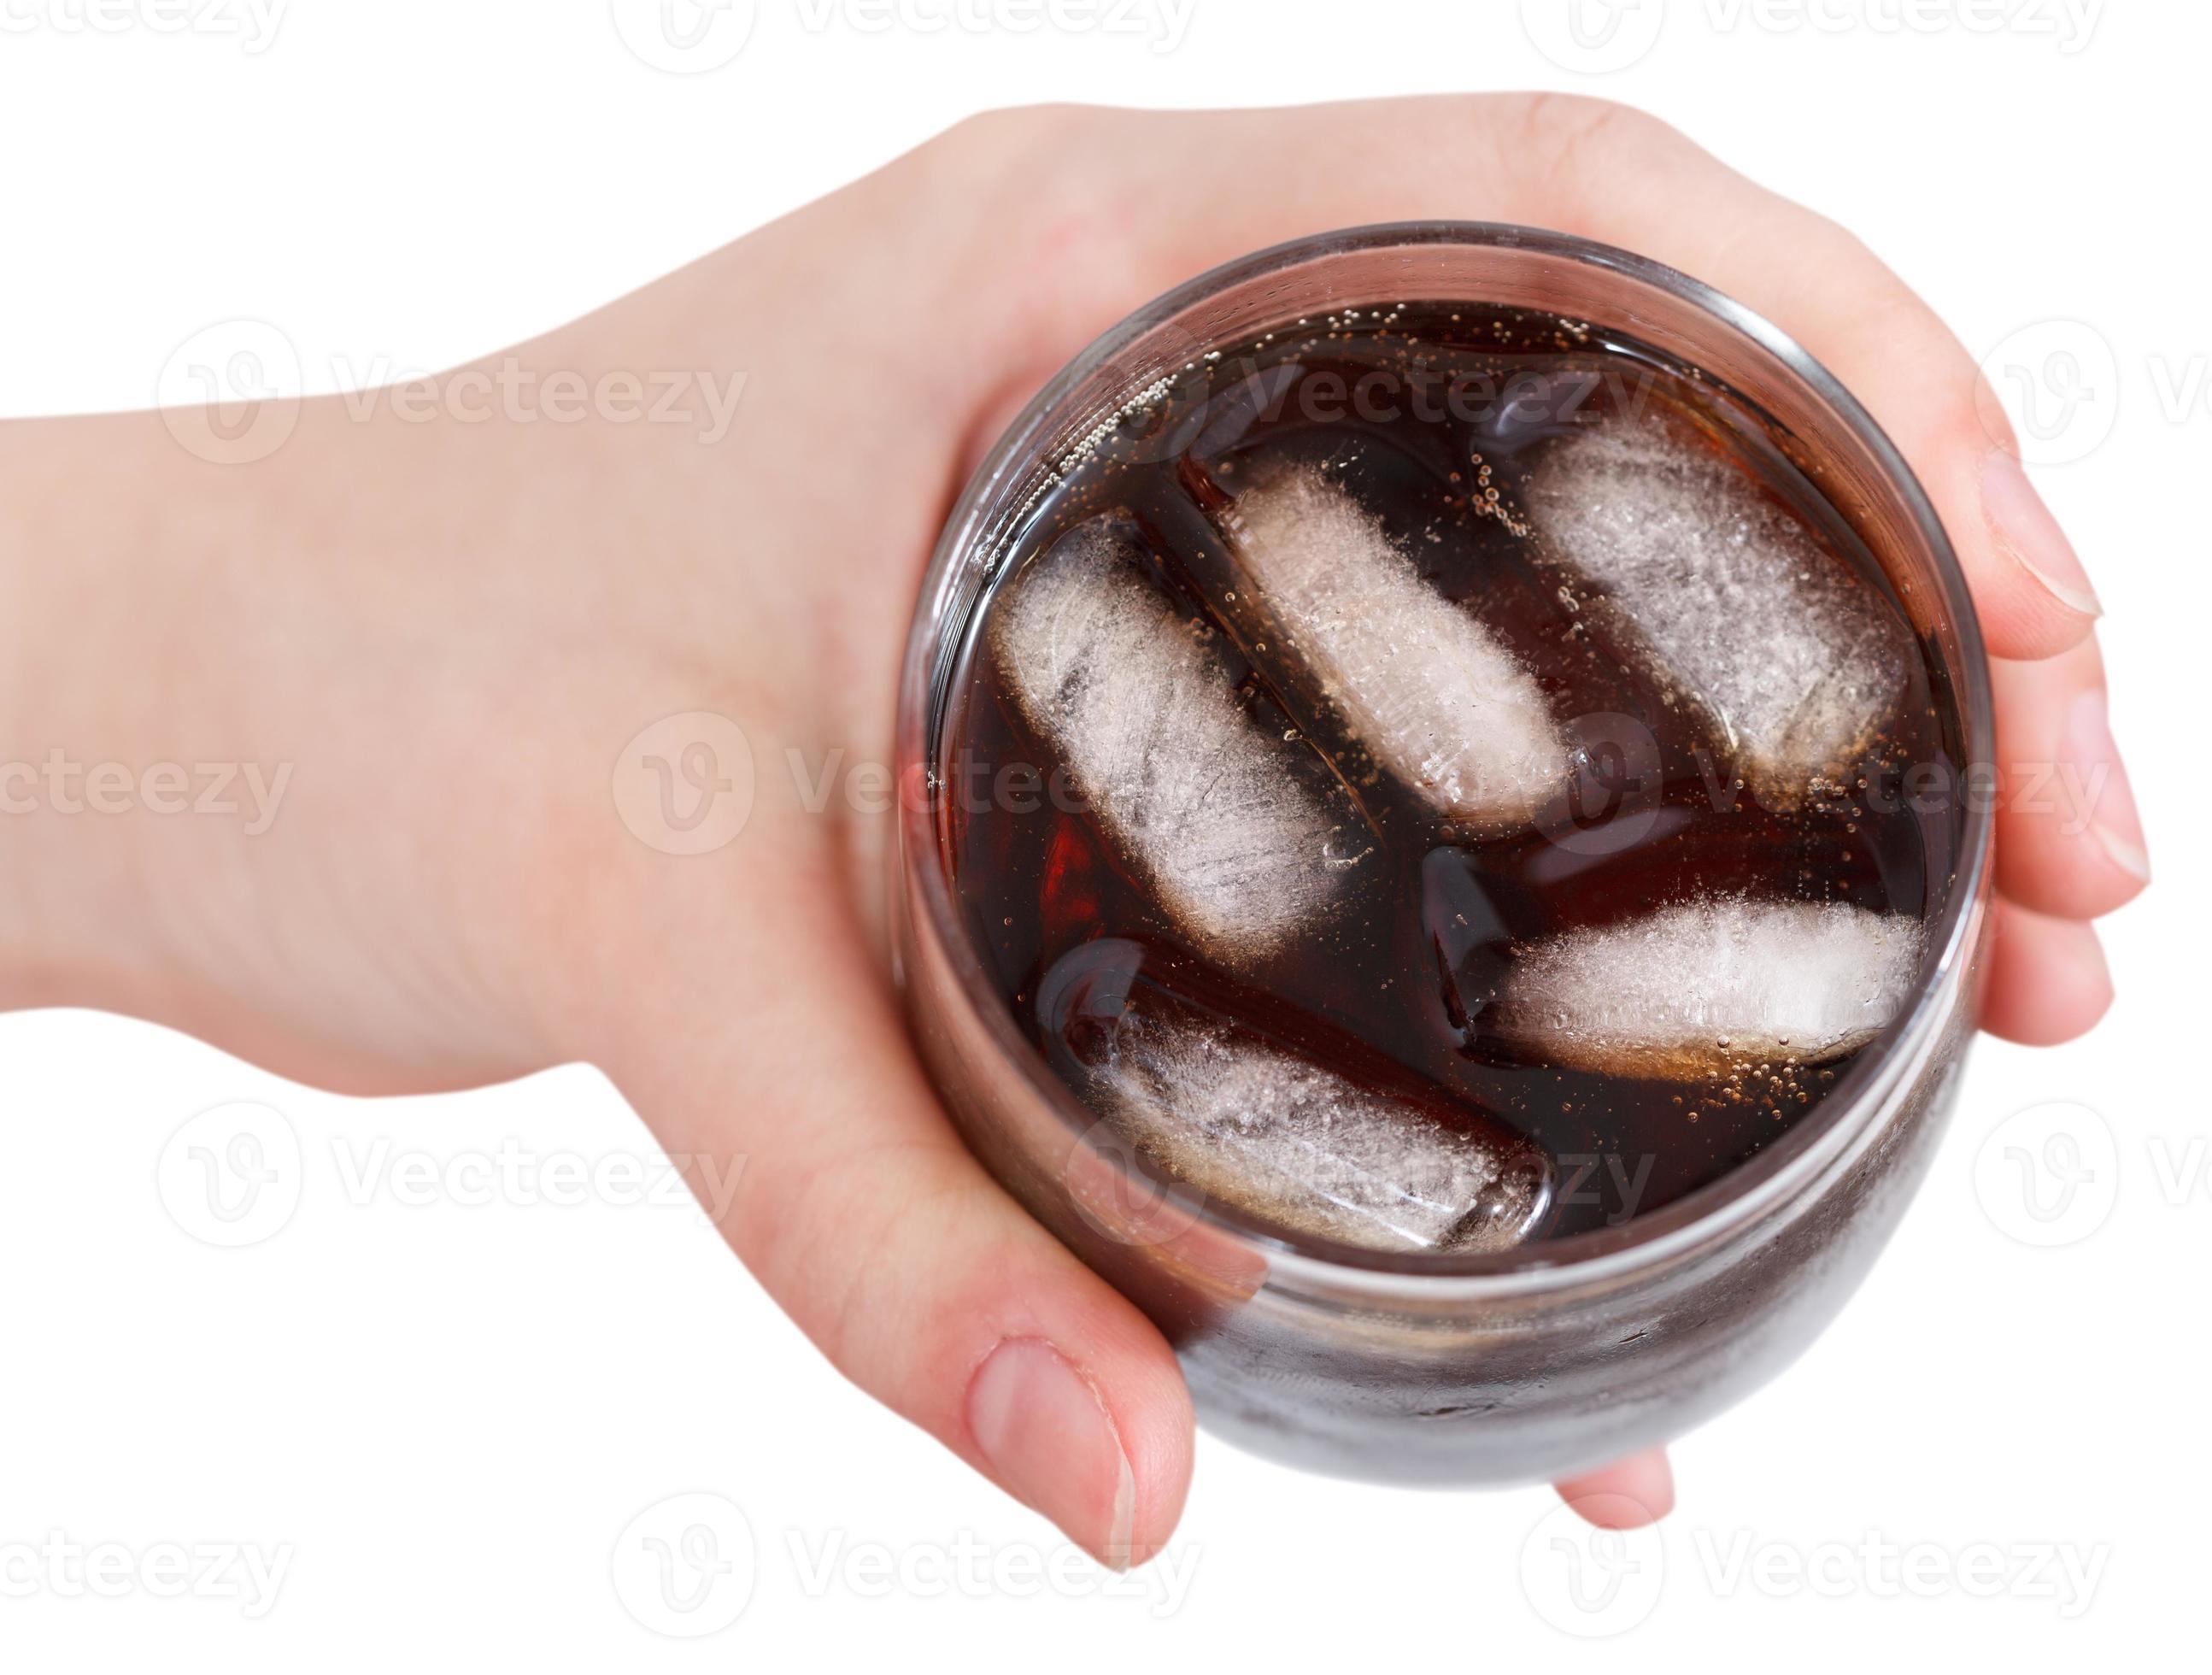 boven het oog van de hand met cola met ijs in glas foto